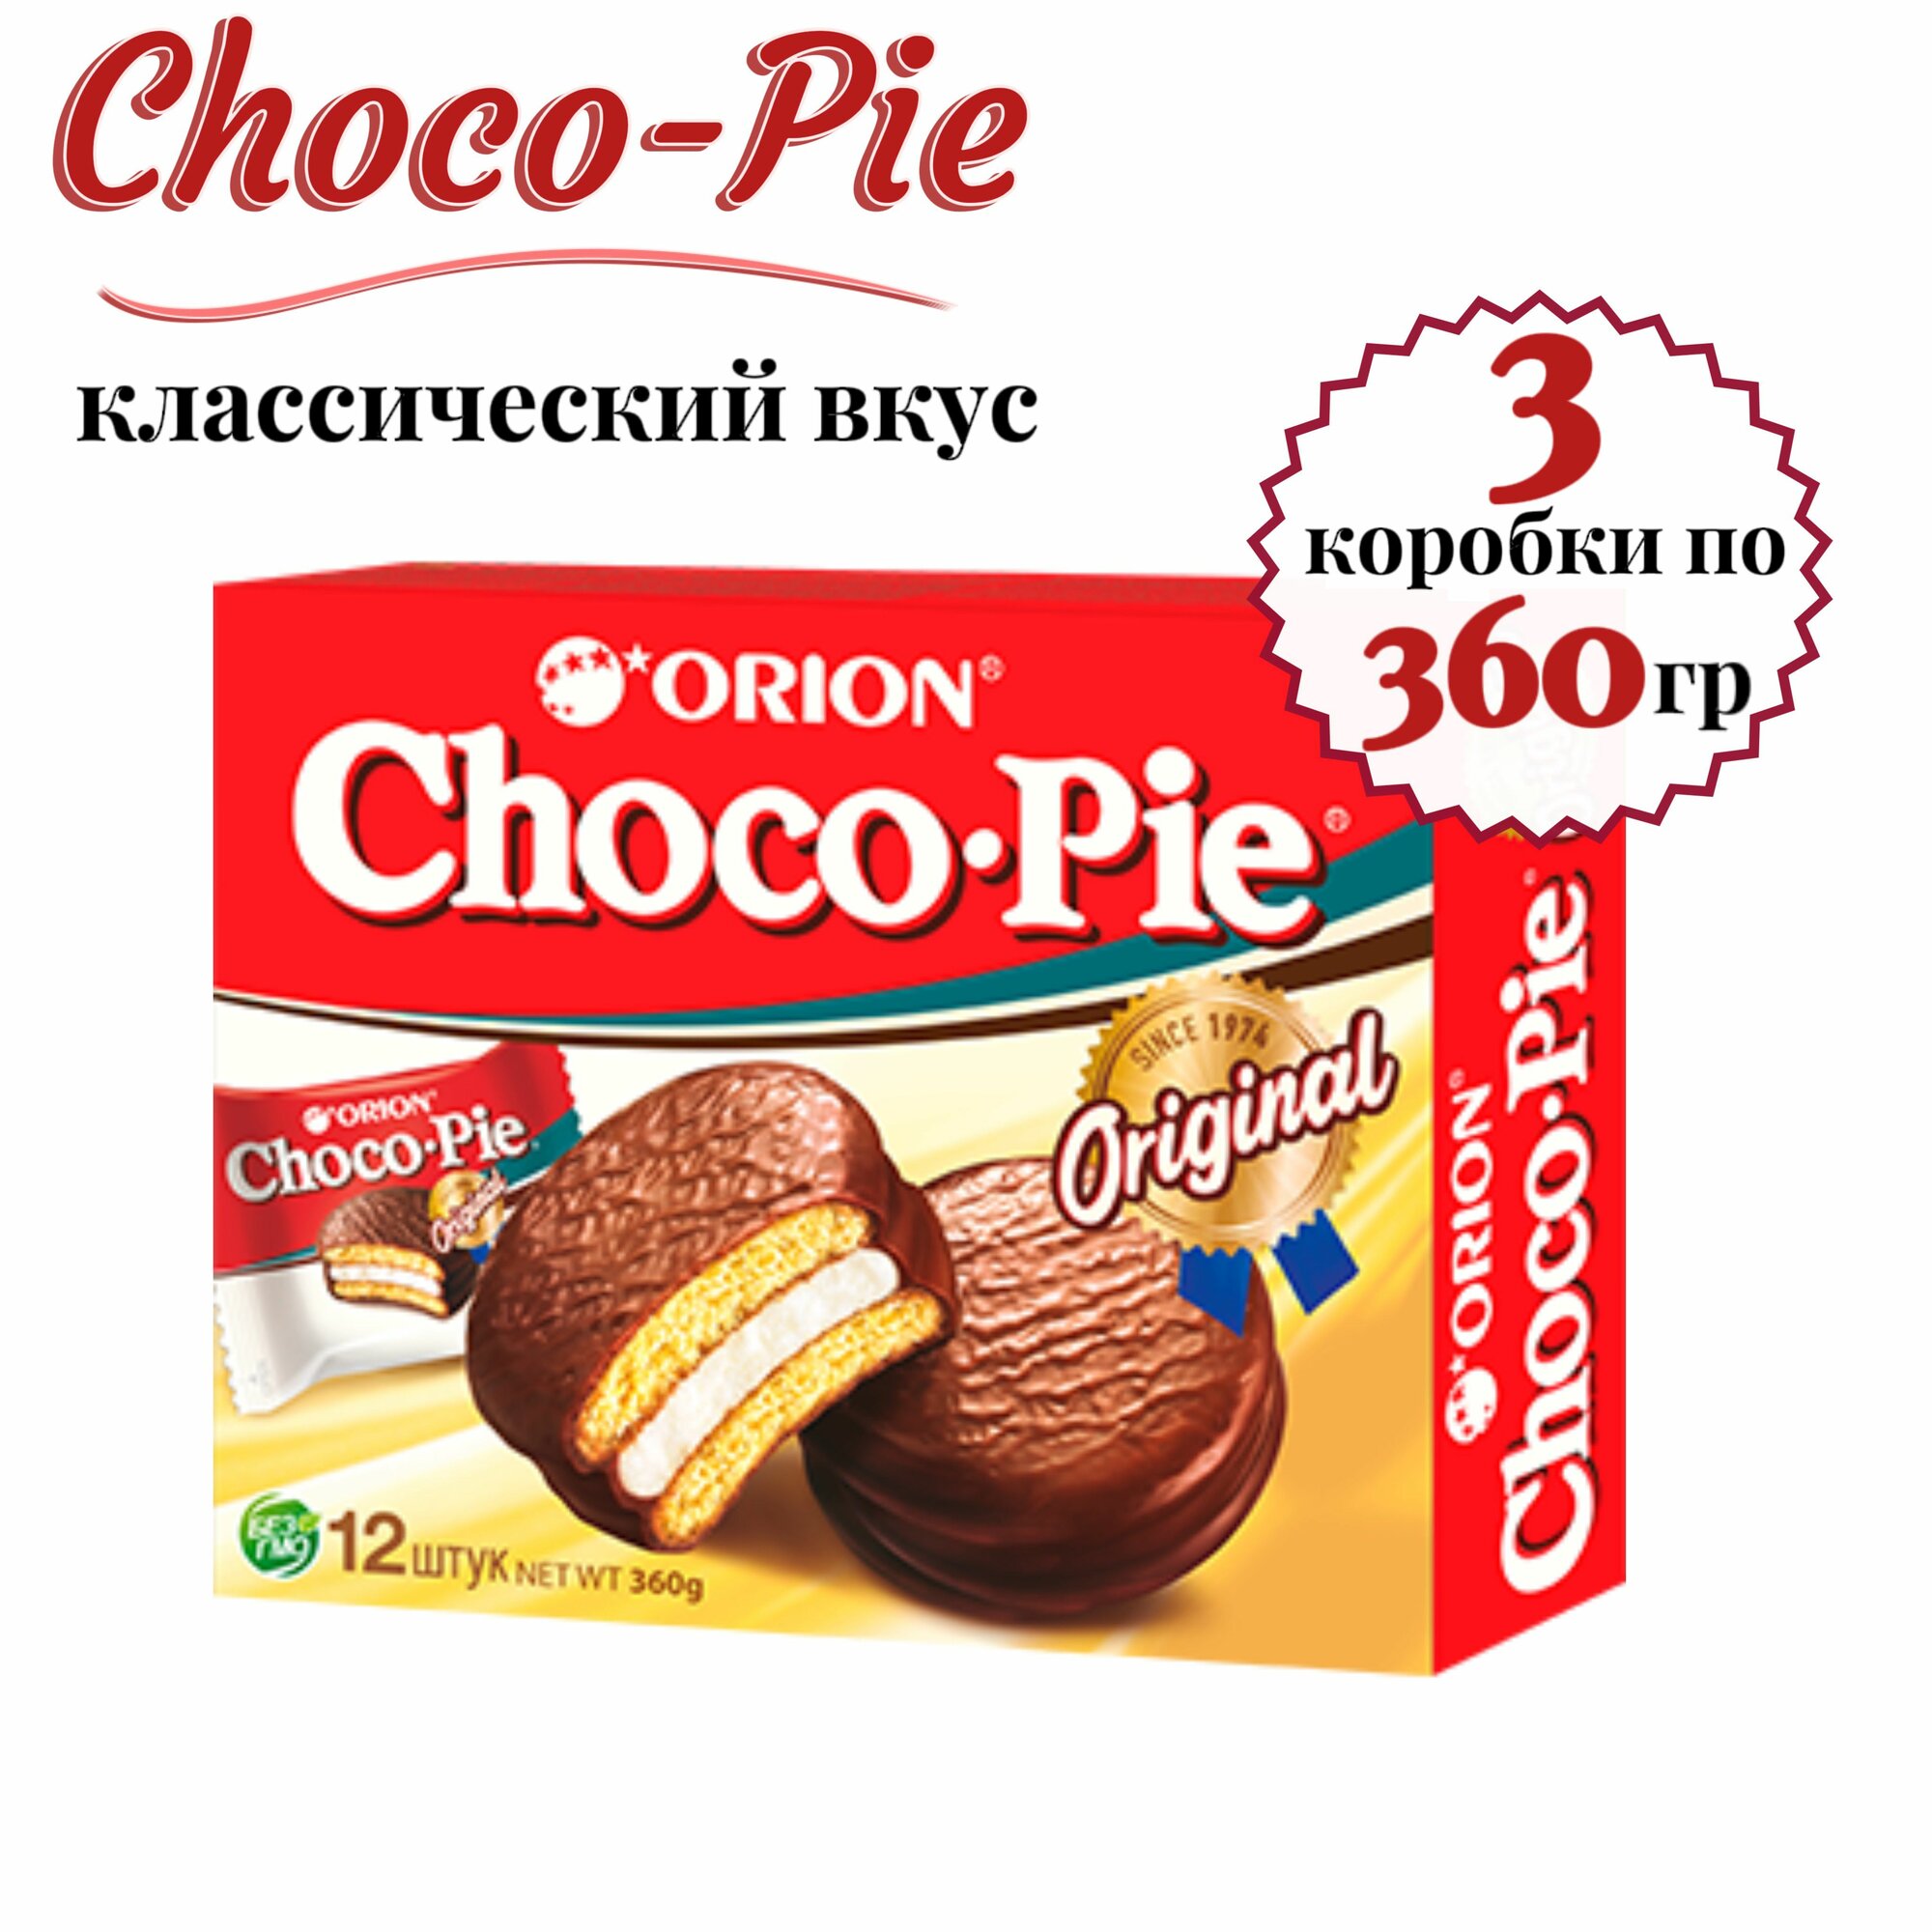 Печенье ORION Choco Pie, 3 шт. по 360 гр.